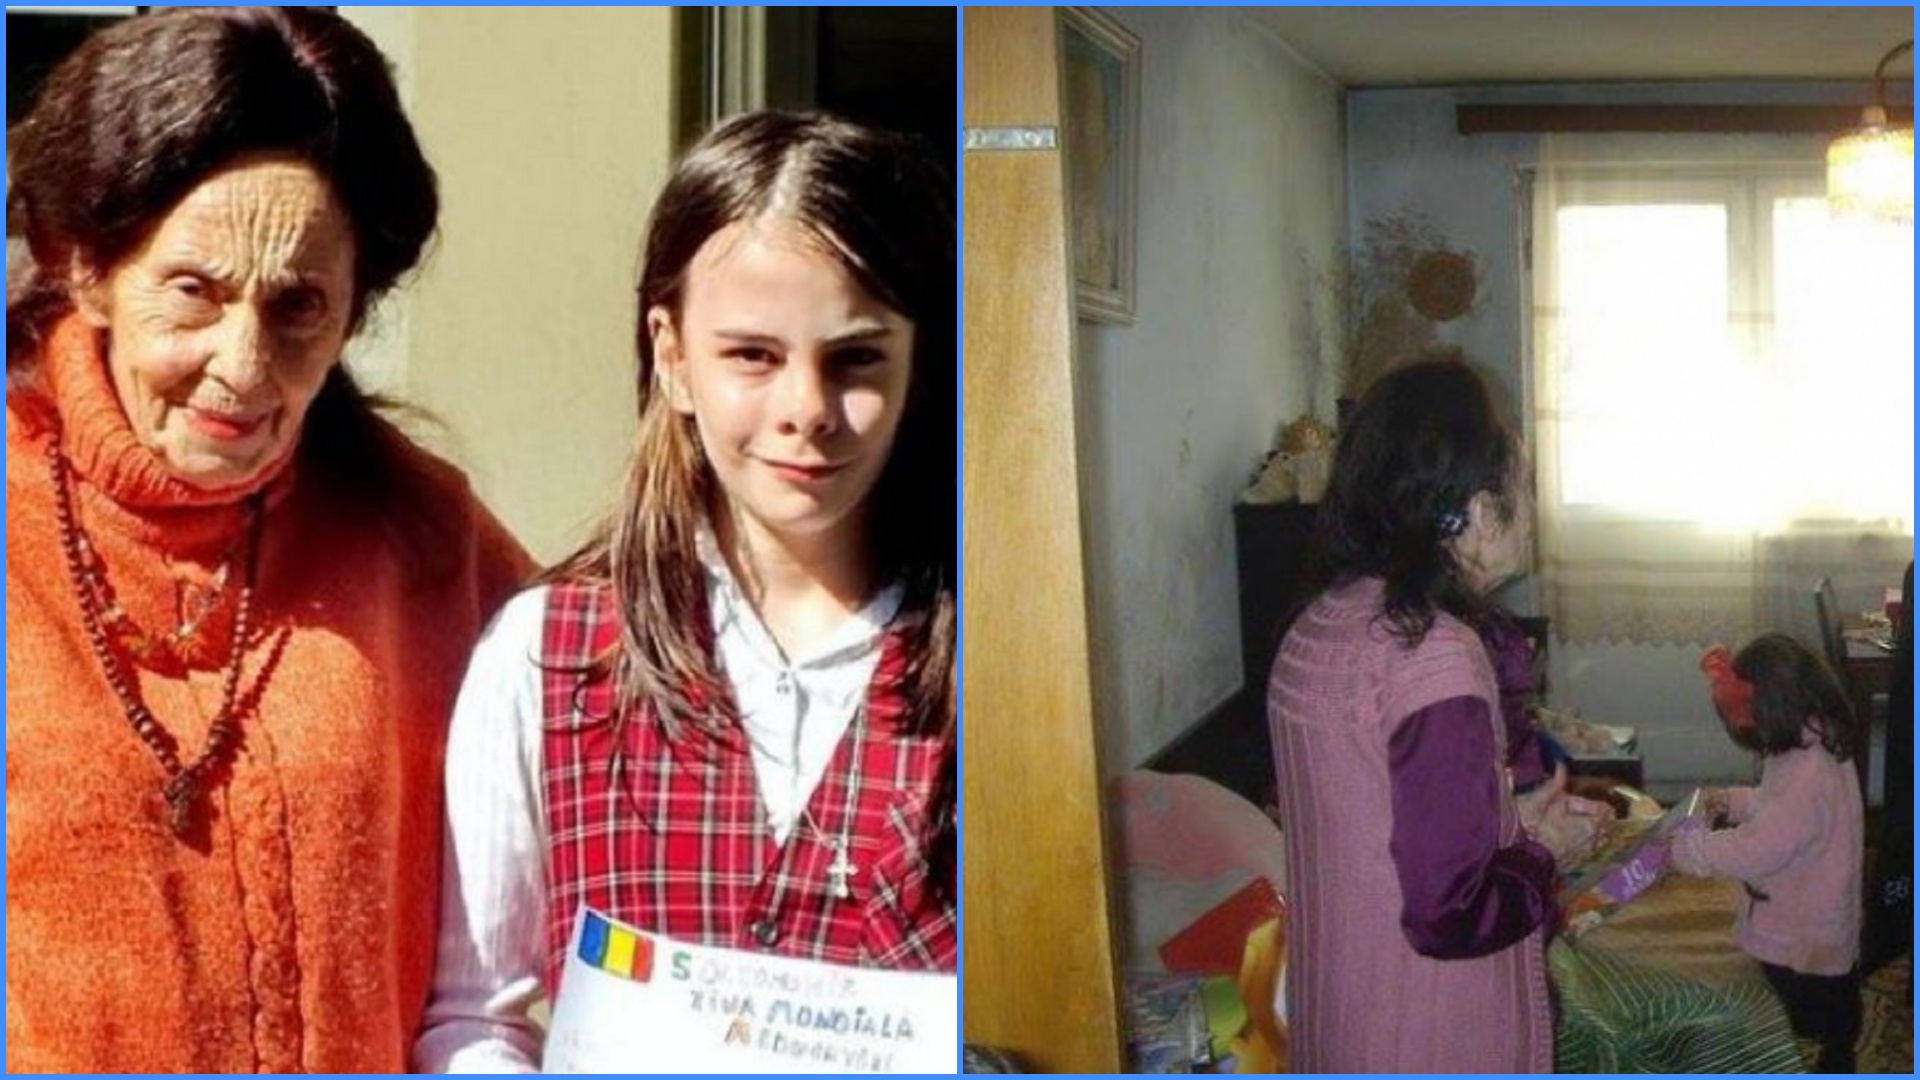 Ce se întâmplă cu Adriana Iliescu în ziua în care ar fi trebuit să-și ducă fiica la școală